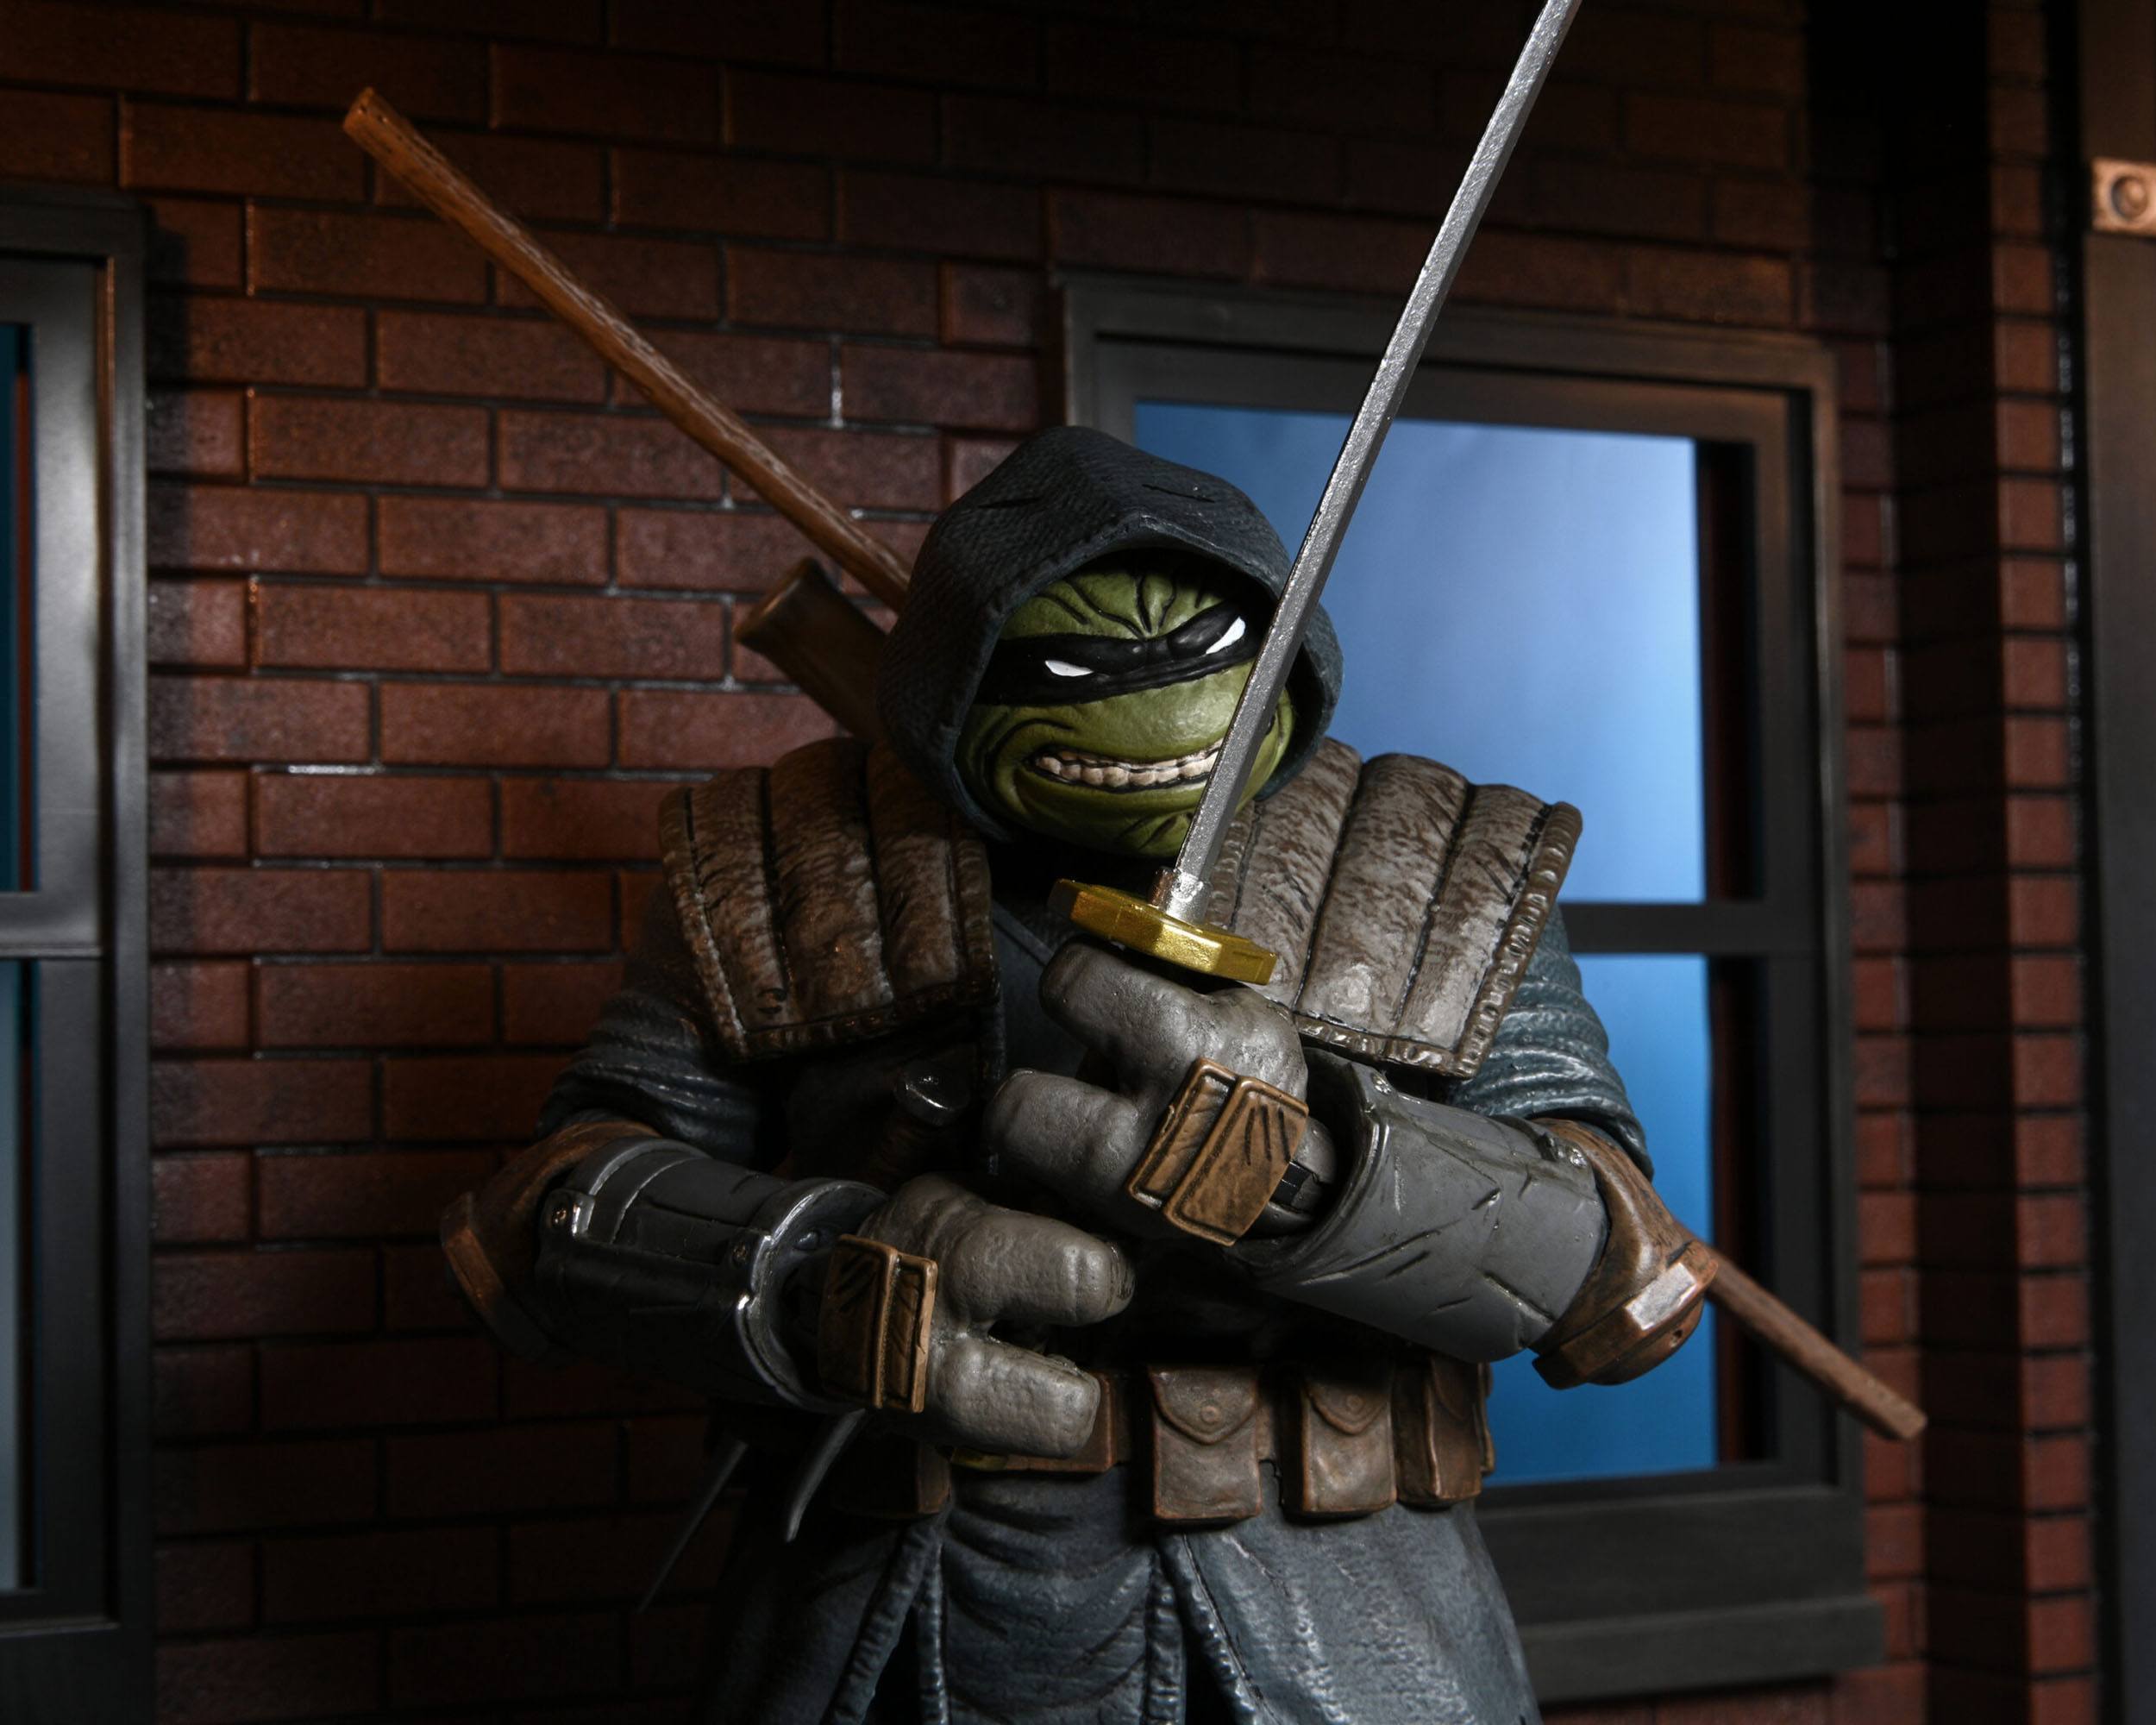 Teenage Mutant Ninja Turtles (IDW Comics) Actionfigur Ultimate The Last Ronin (Armored) 18 cm NECA54268 634482542682